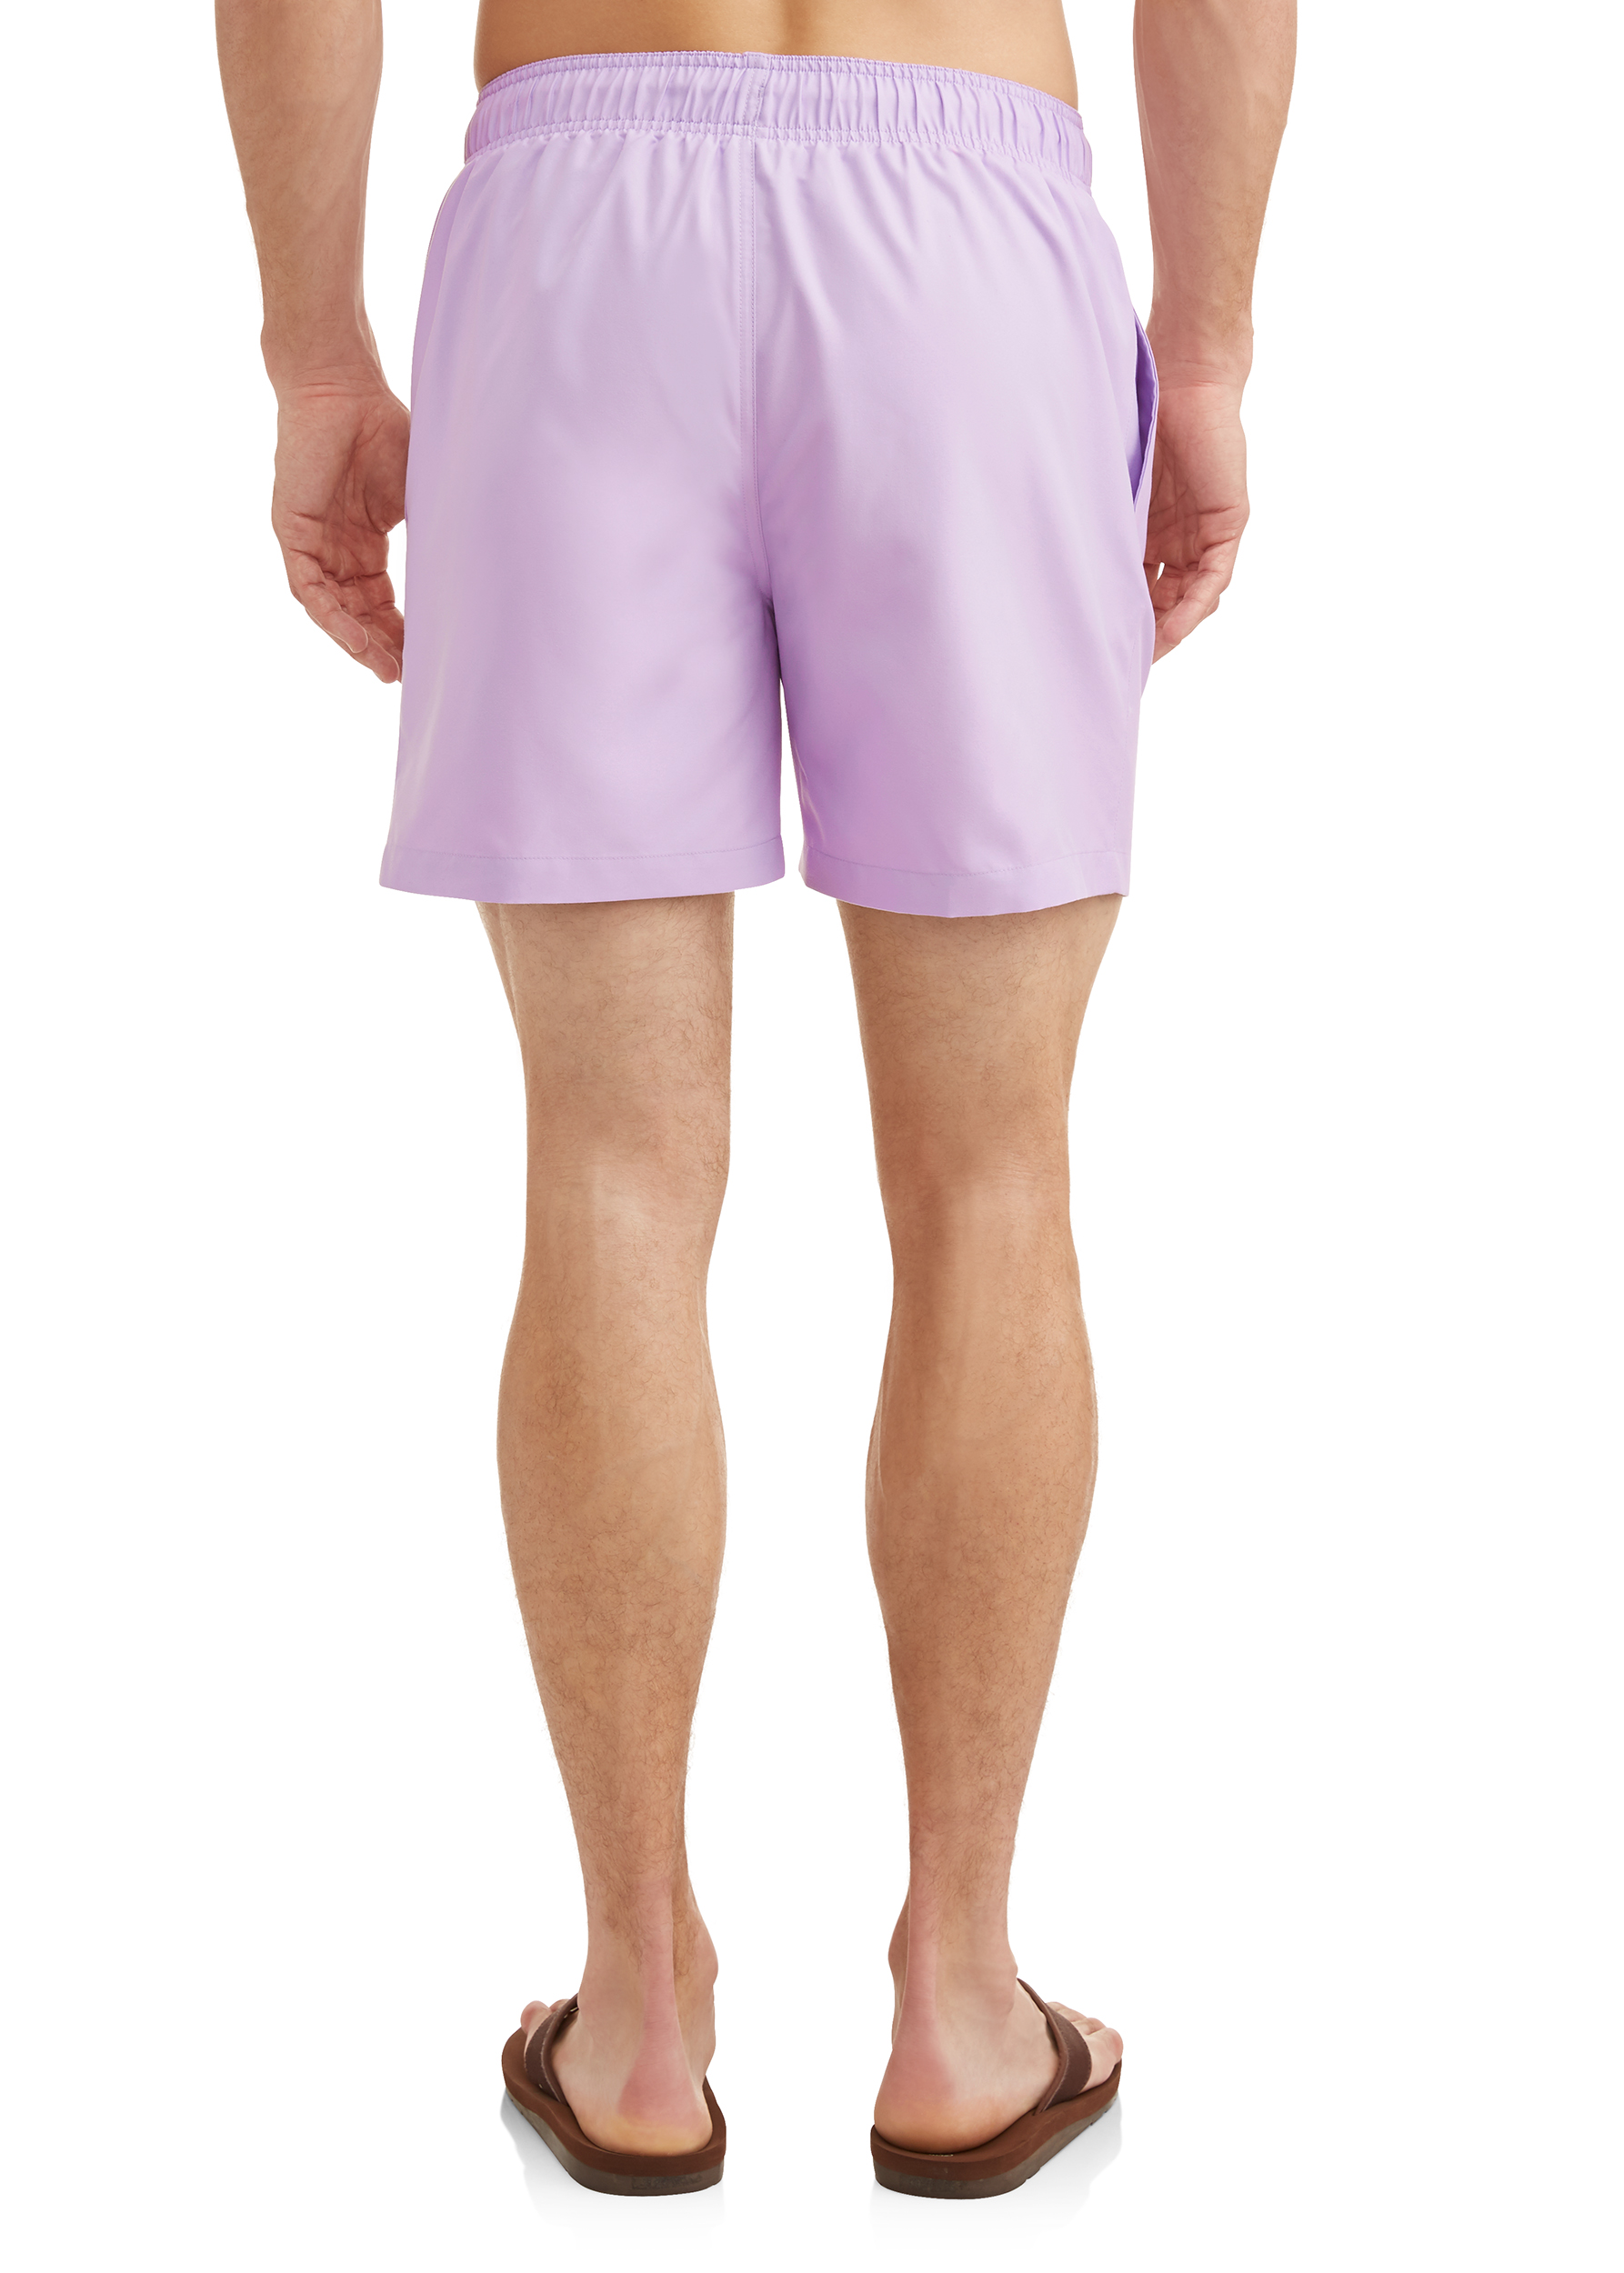 George Basic 6-inch Swim Short, up to size 5XL - image 2 of 4